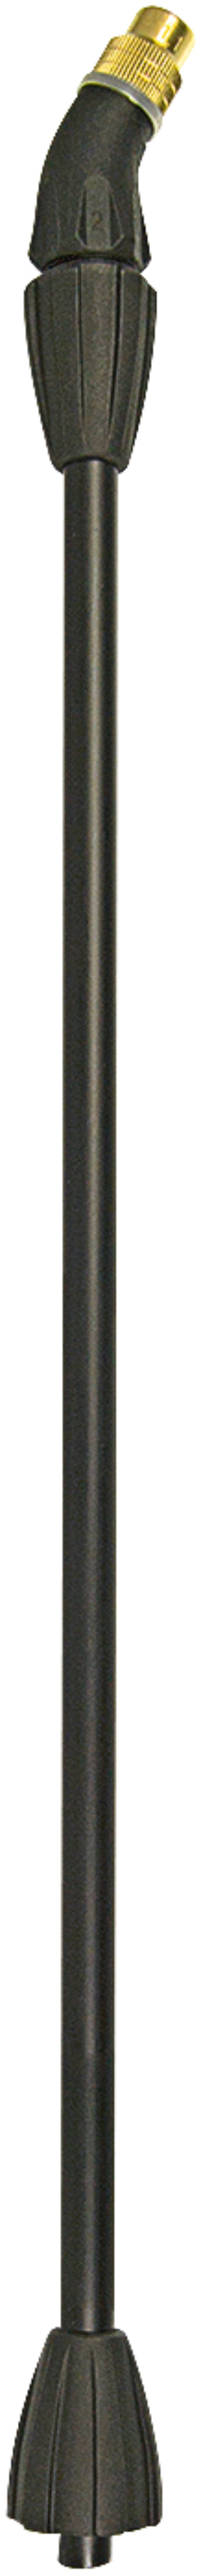 MESTO Spritzrohr, gebogen, 48 cm mit Düse 1,1 mm, KS